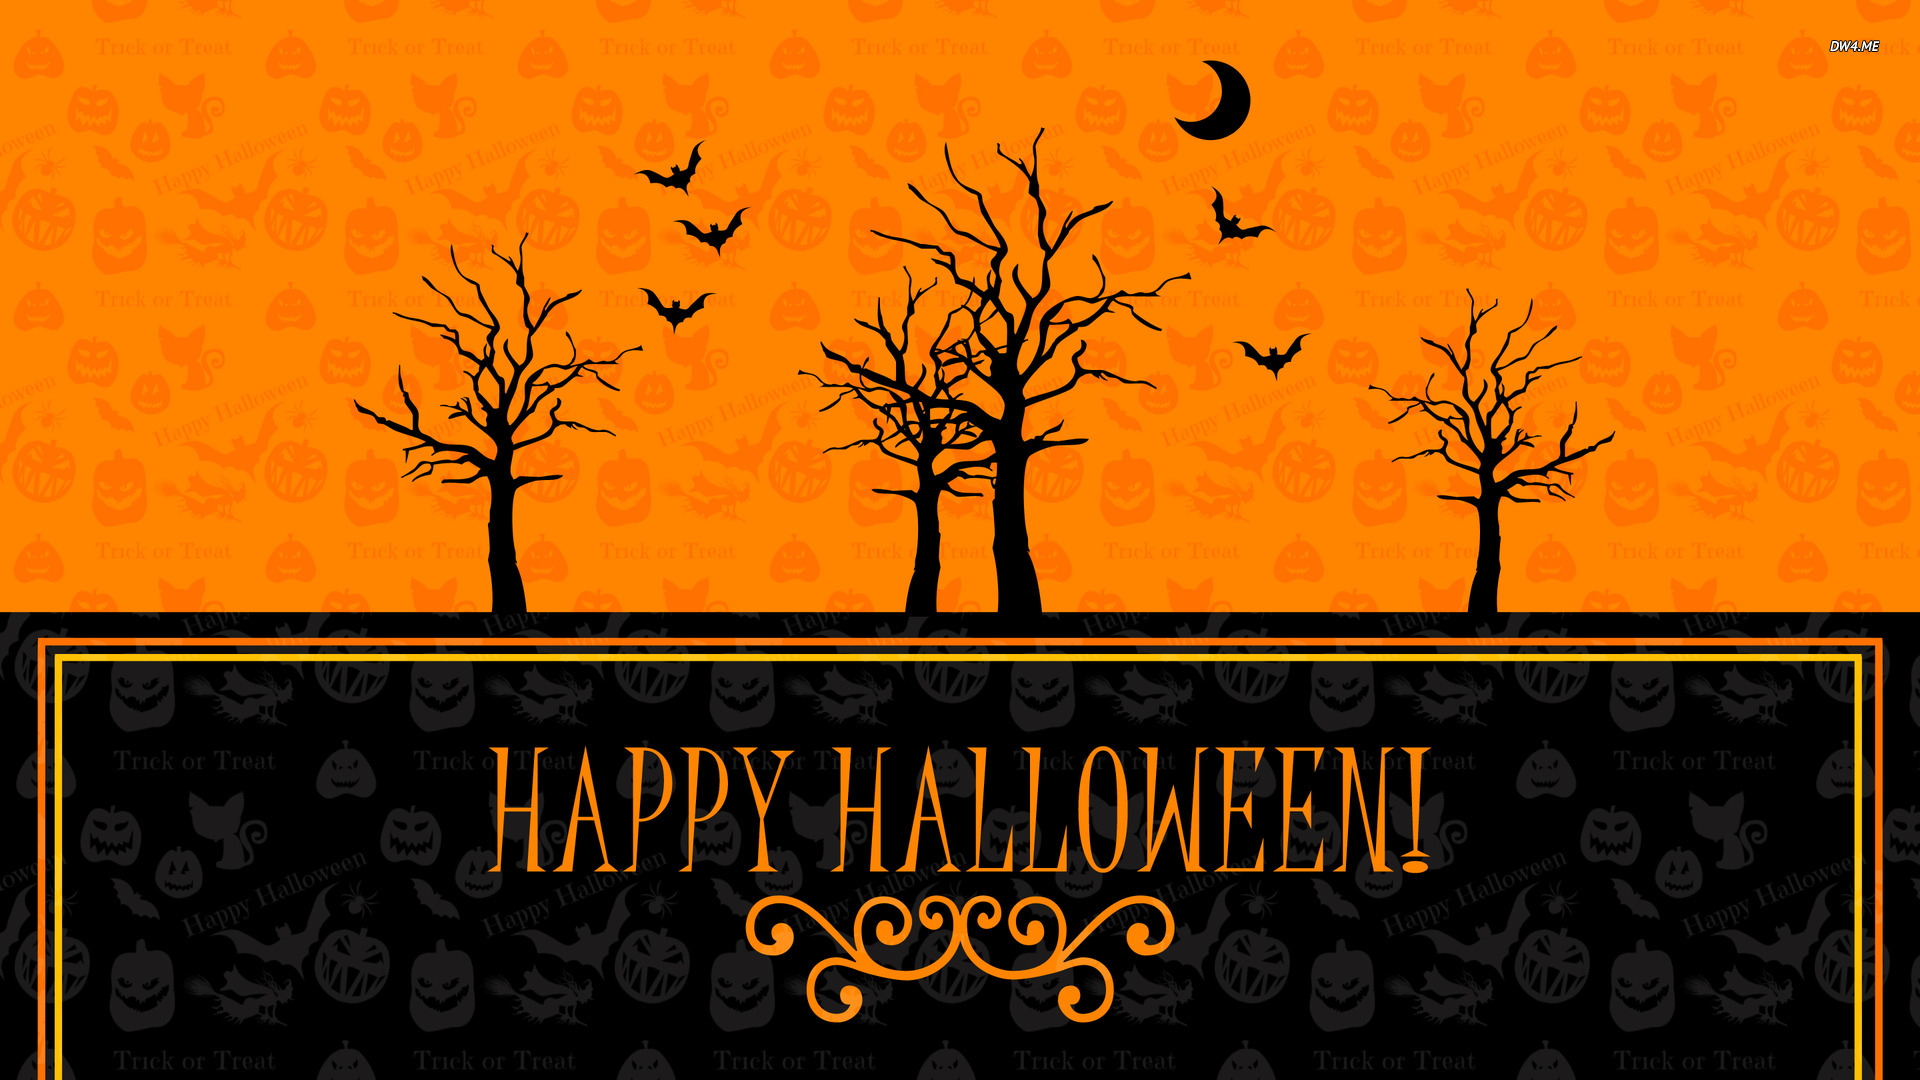 Happy Halloween Desktop Backgrounds , HD Wallpaper & Backgrounds